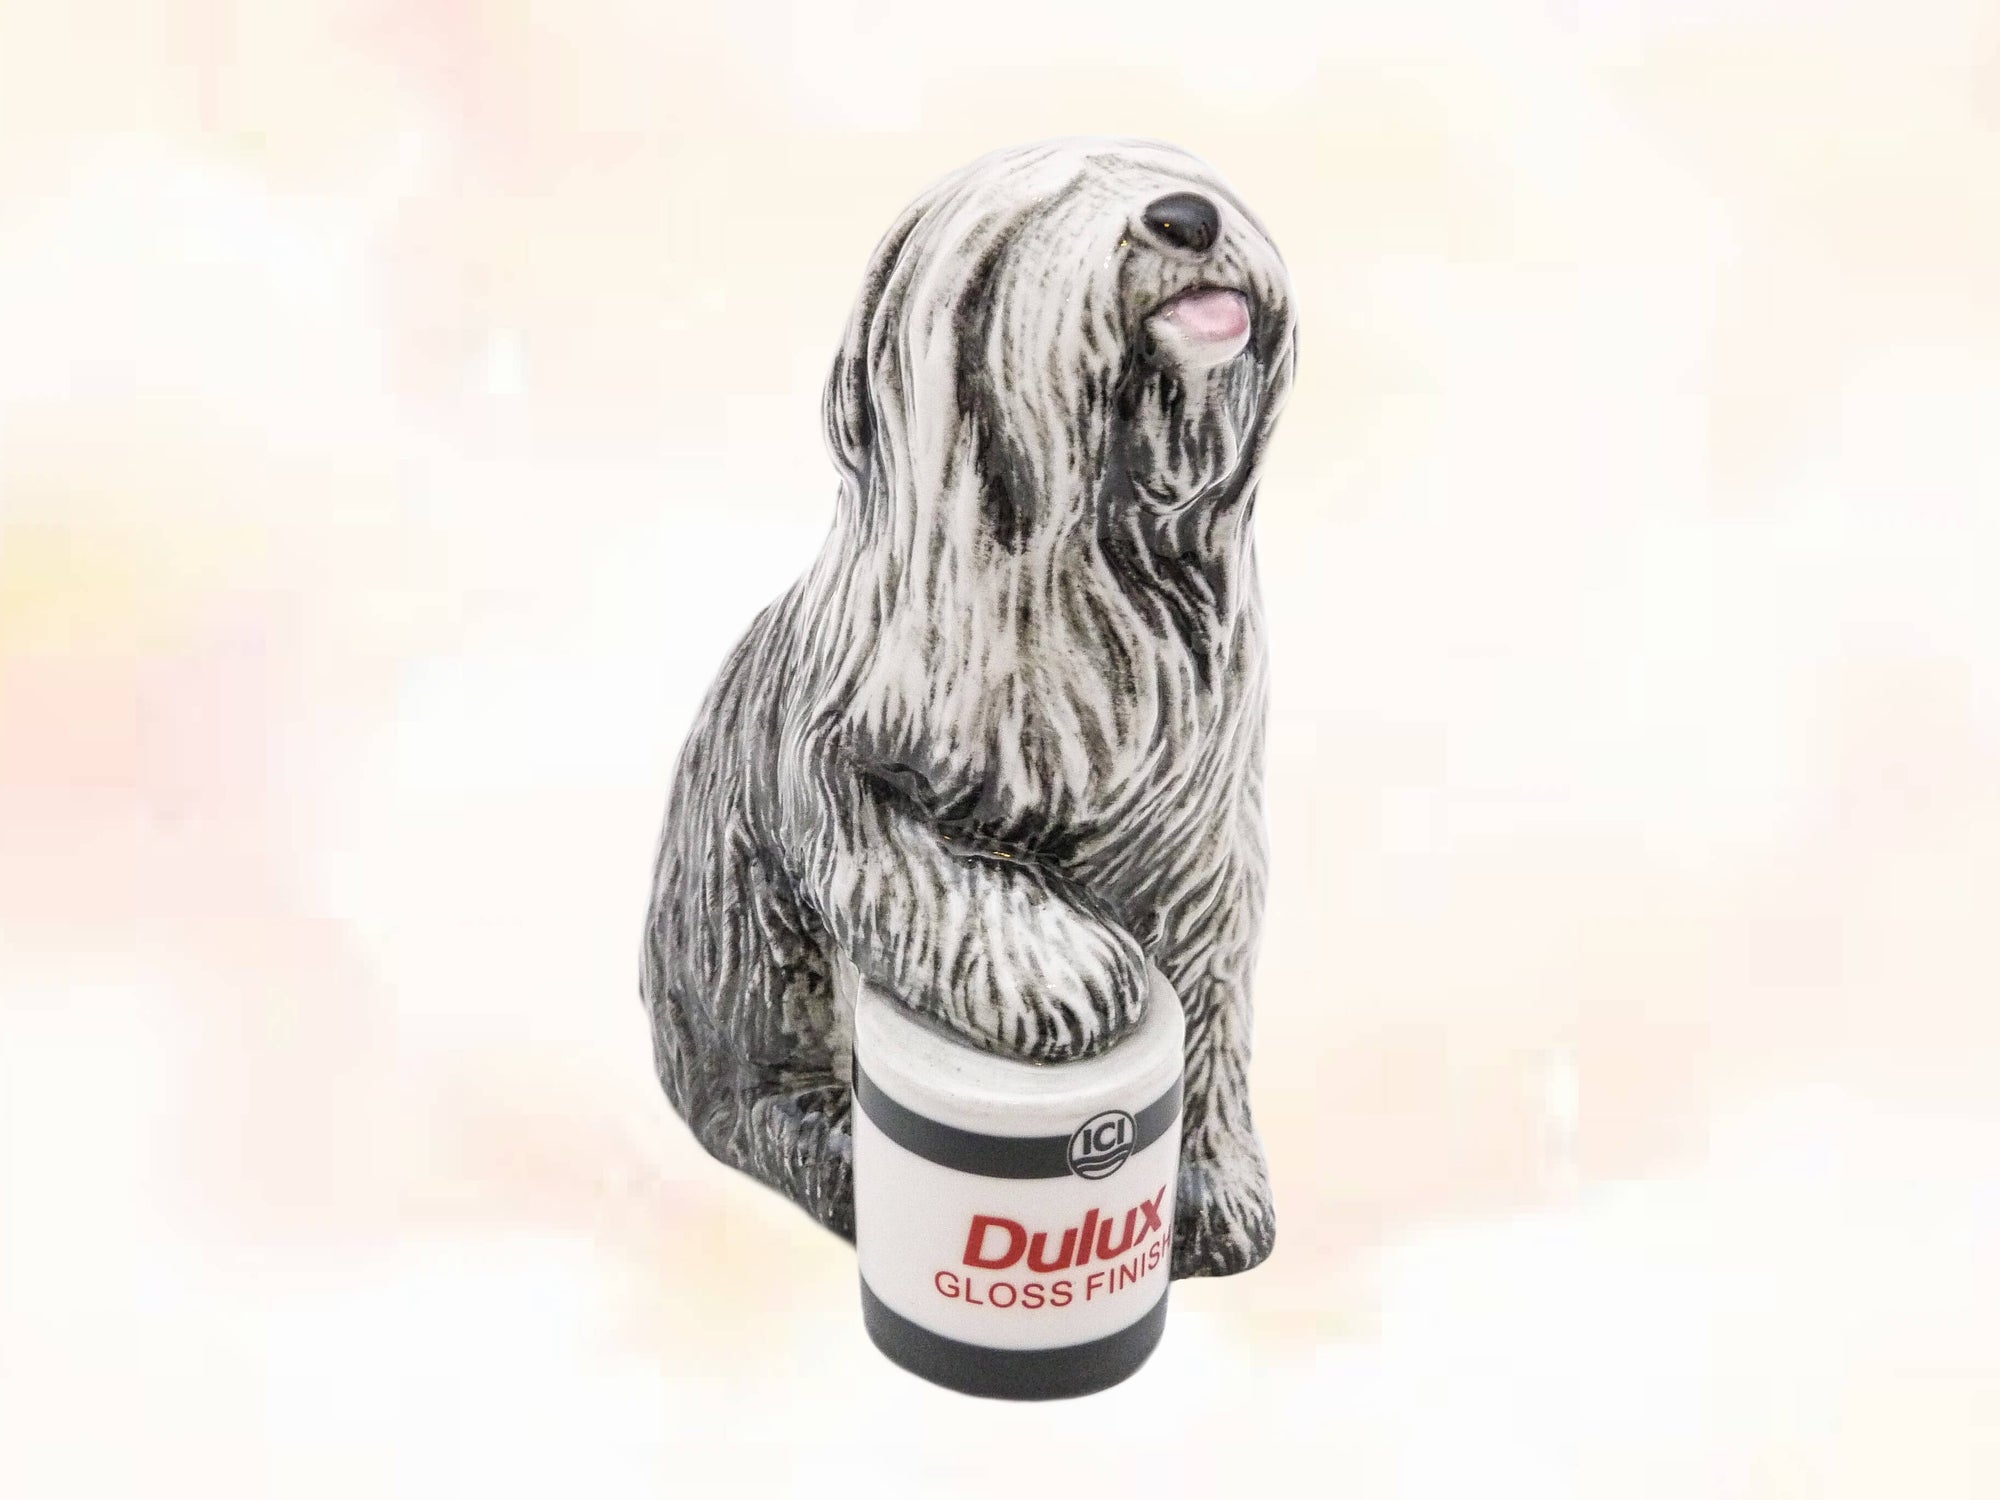 Dulux Dog Figurine Celebrating 50 Years, Royal Doulton, Iconic Figure